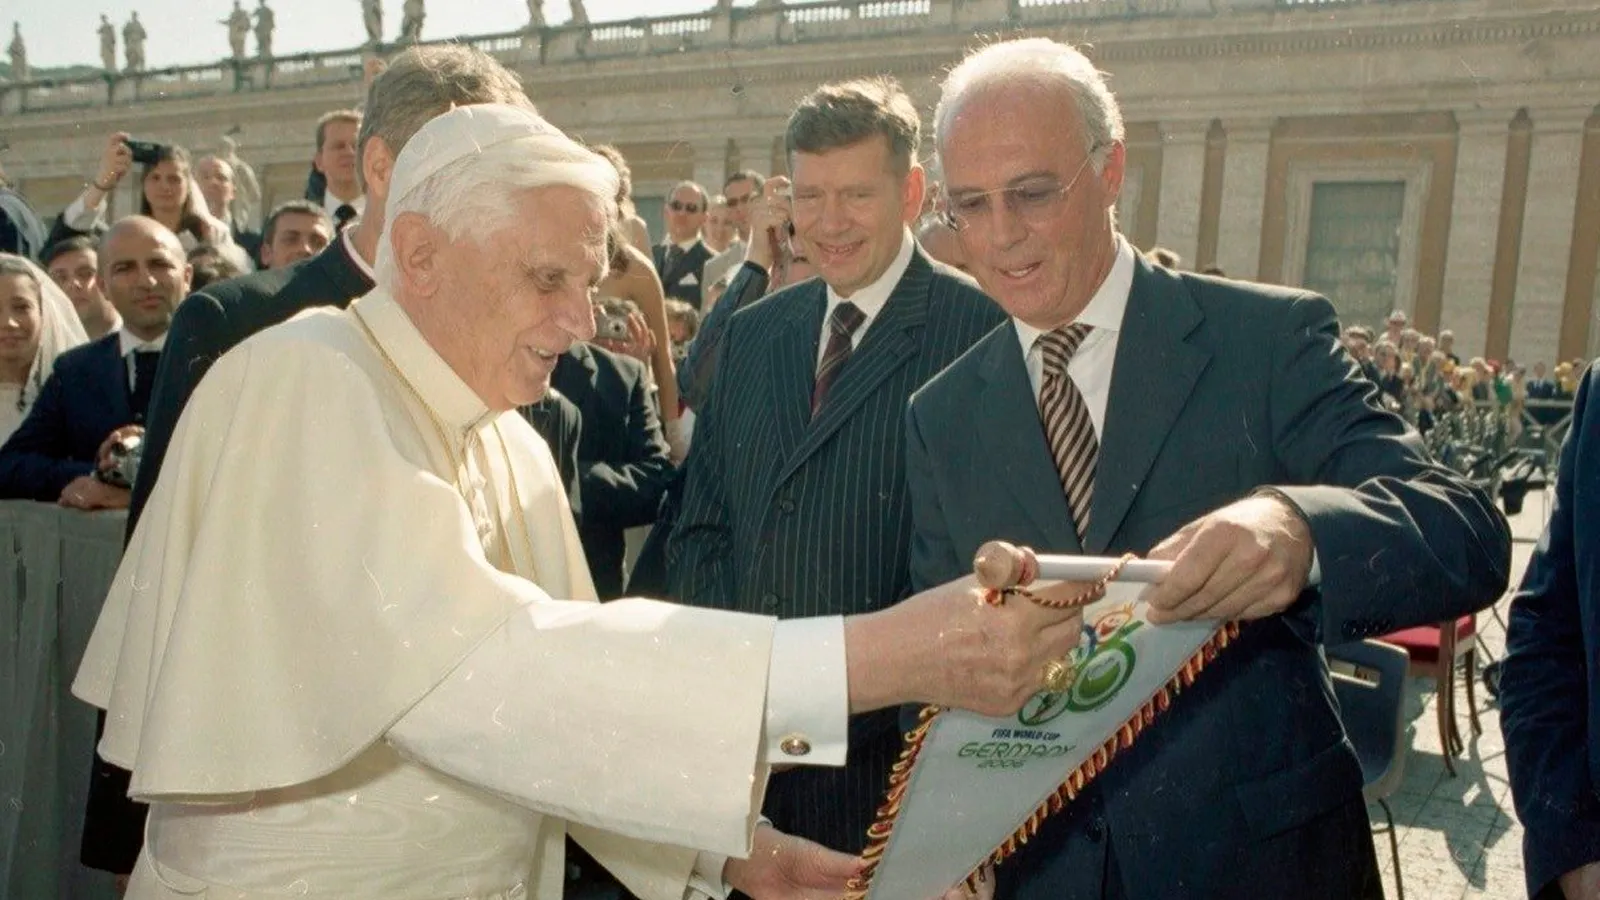 Aquel día, Beckenbauer estrechó la mano de Benedicto XVI y le regaló un banderín del Mundial.?w=200&h=150